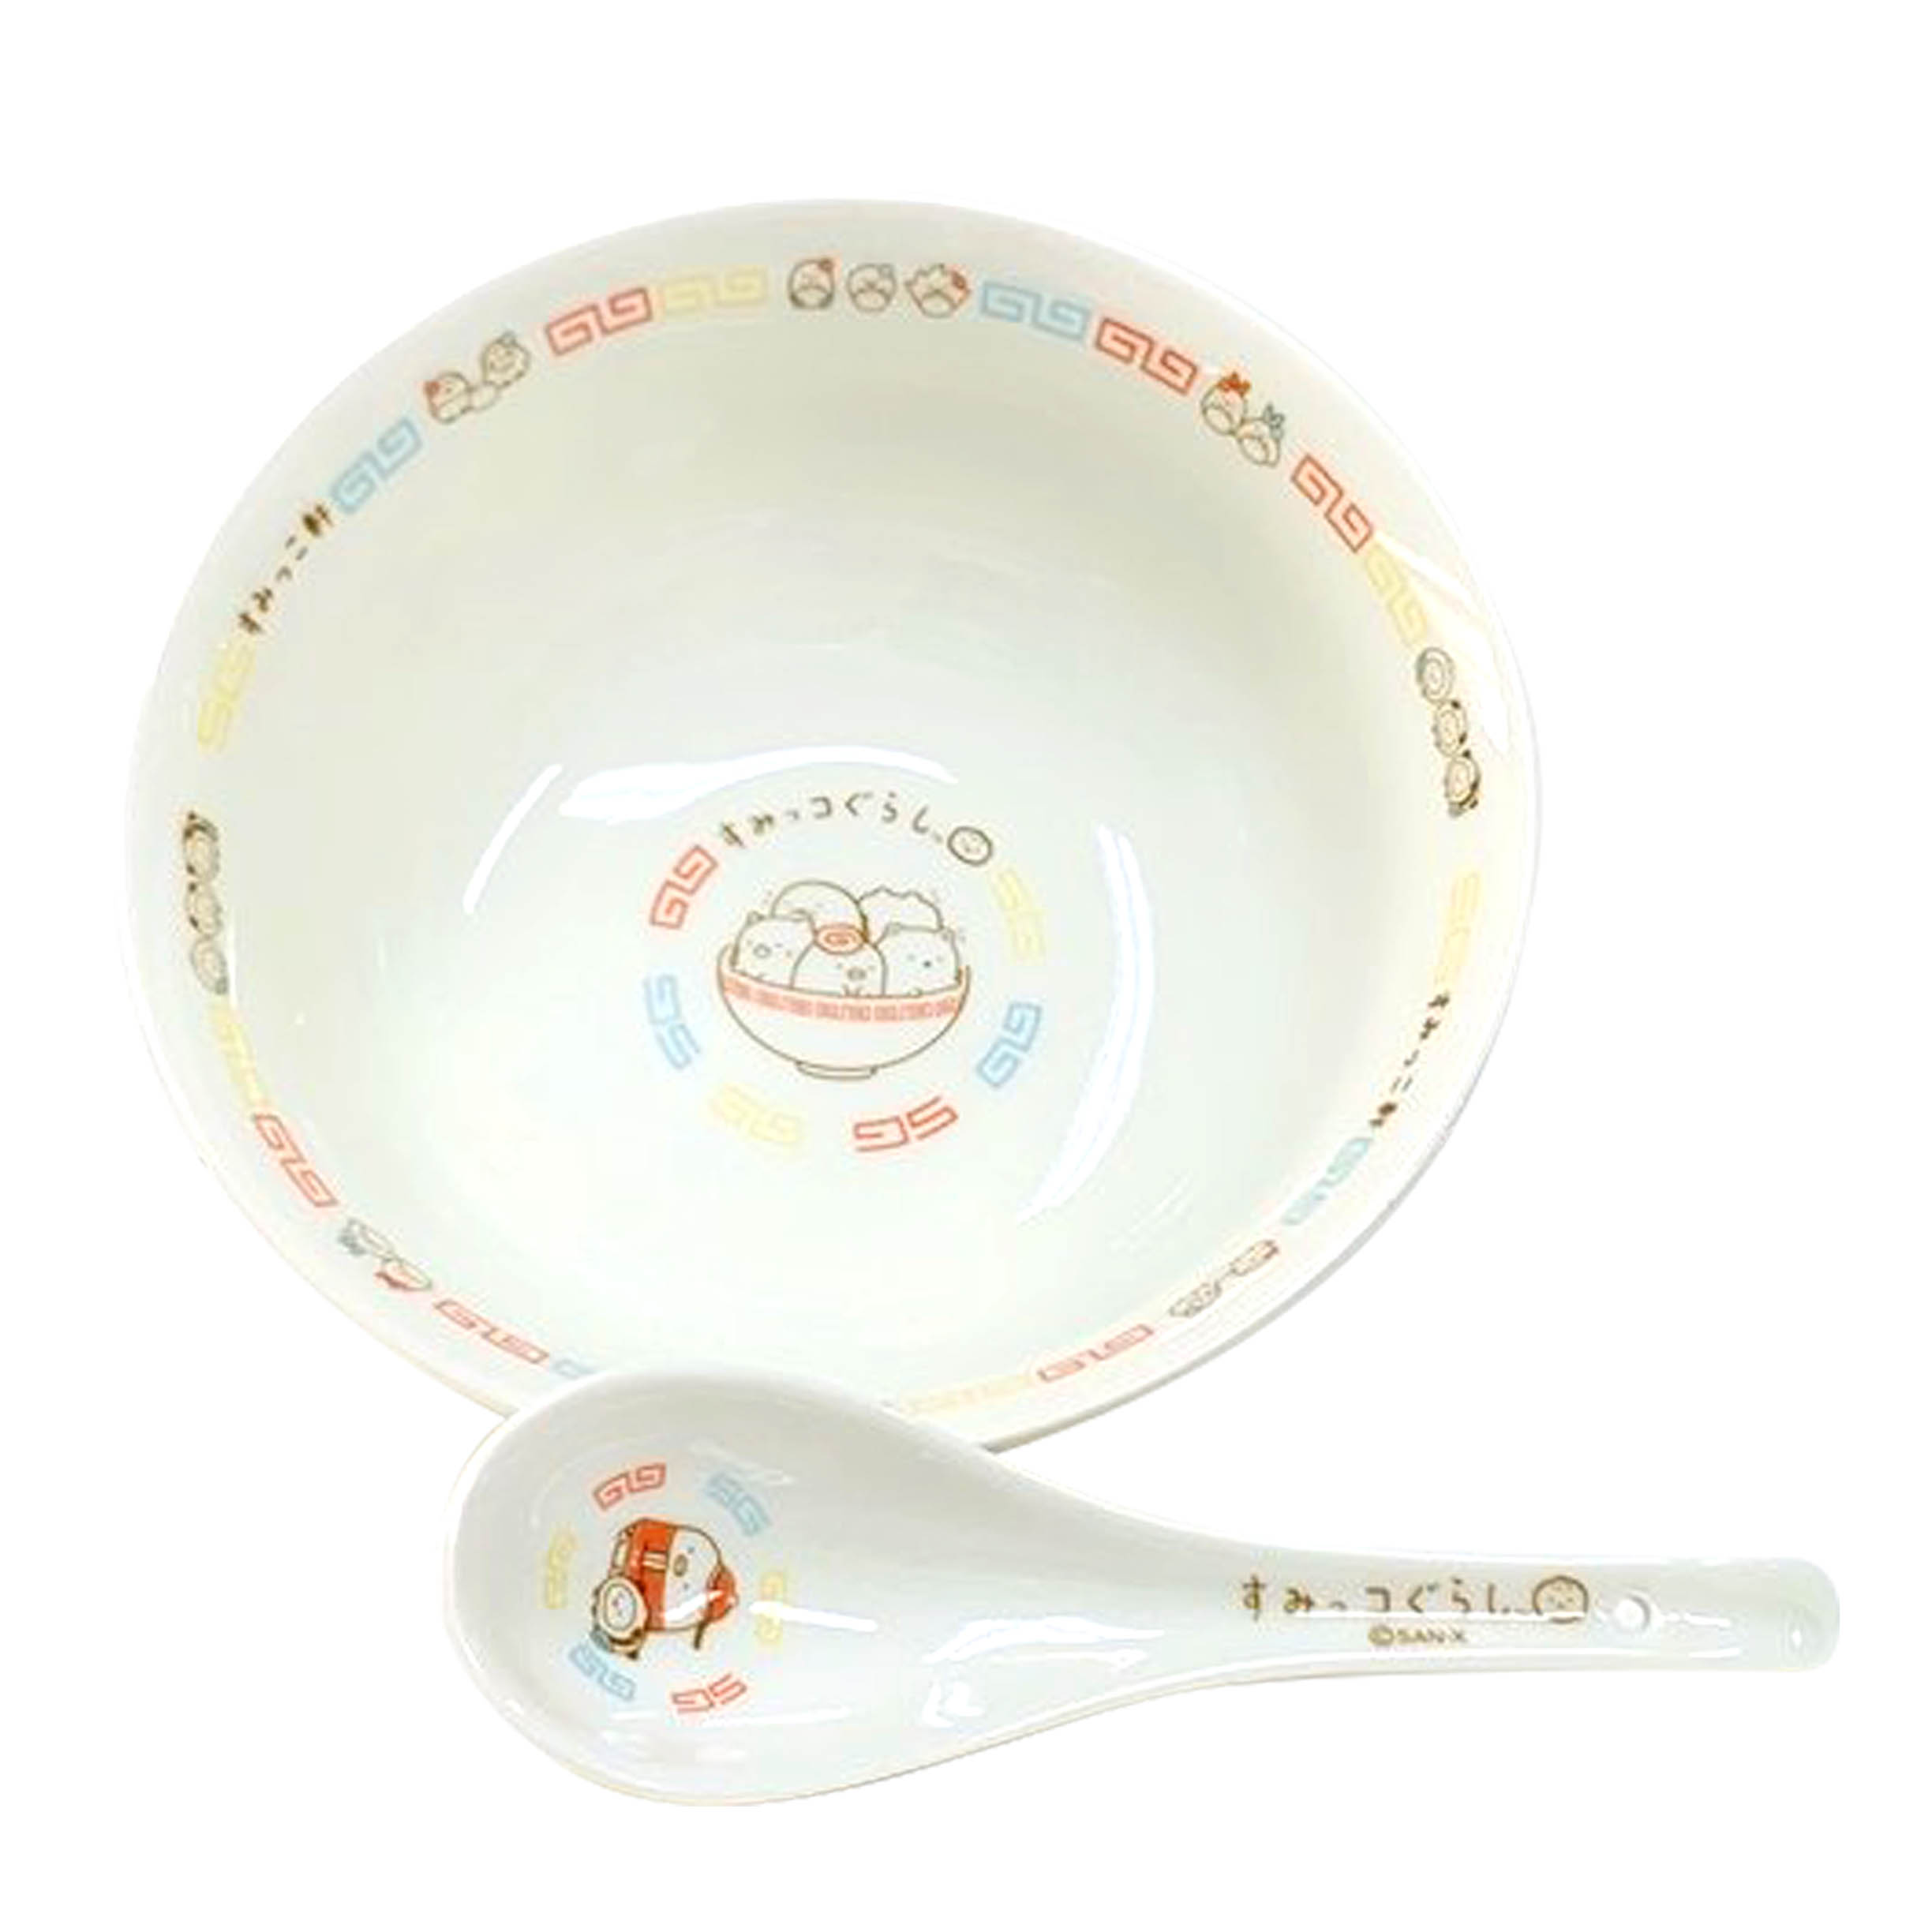 陶瓷拉麵碗-附湯匙 角落生物 sumikko gurashi SAN-X 日本進口正版授權